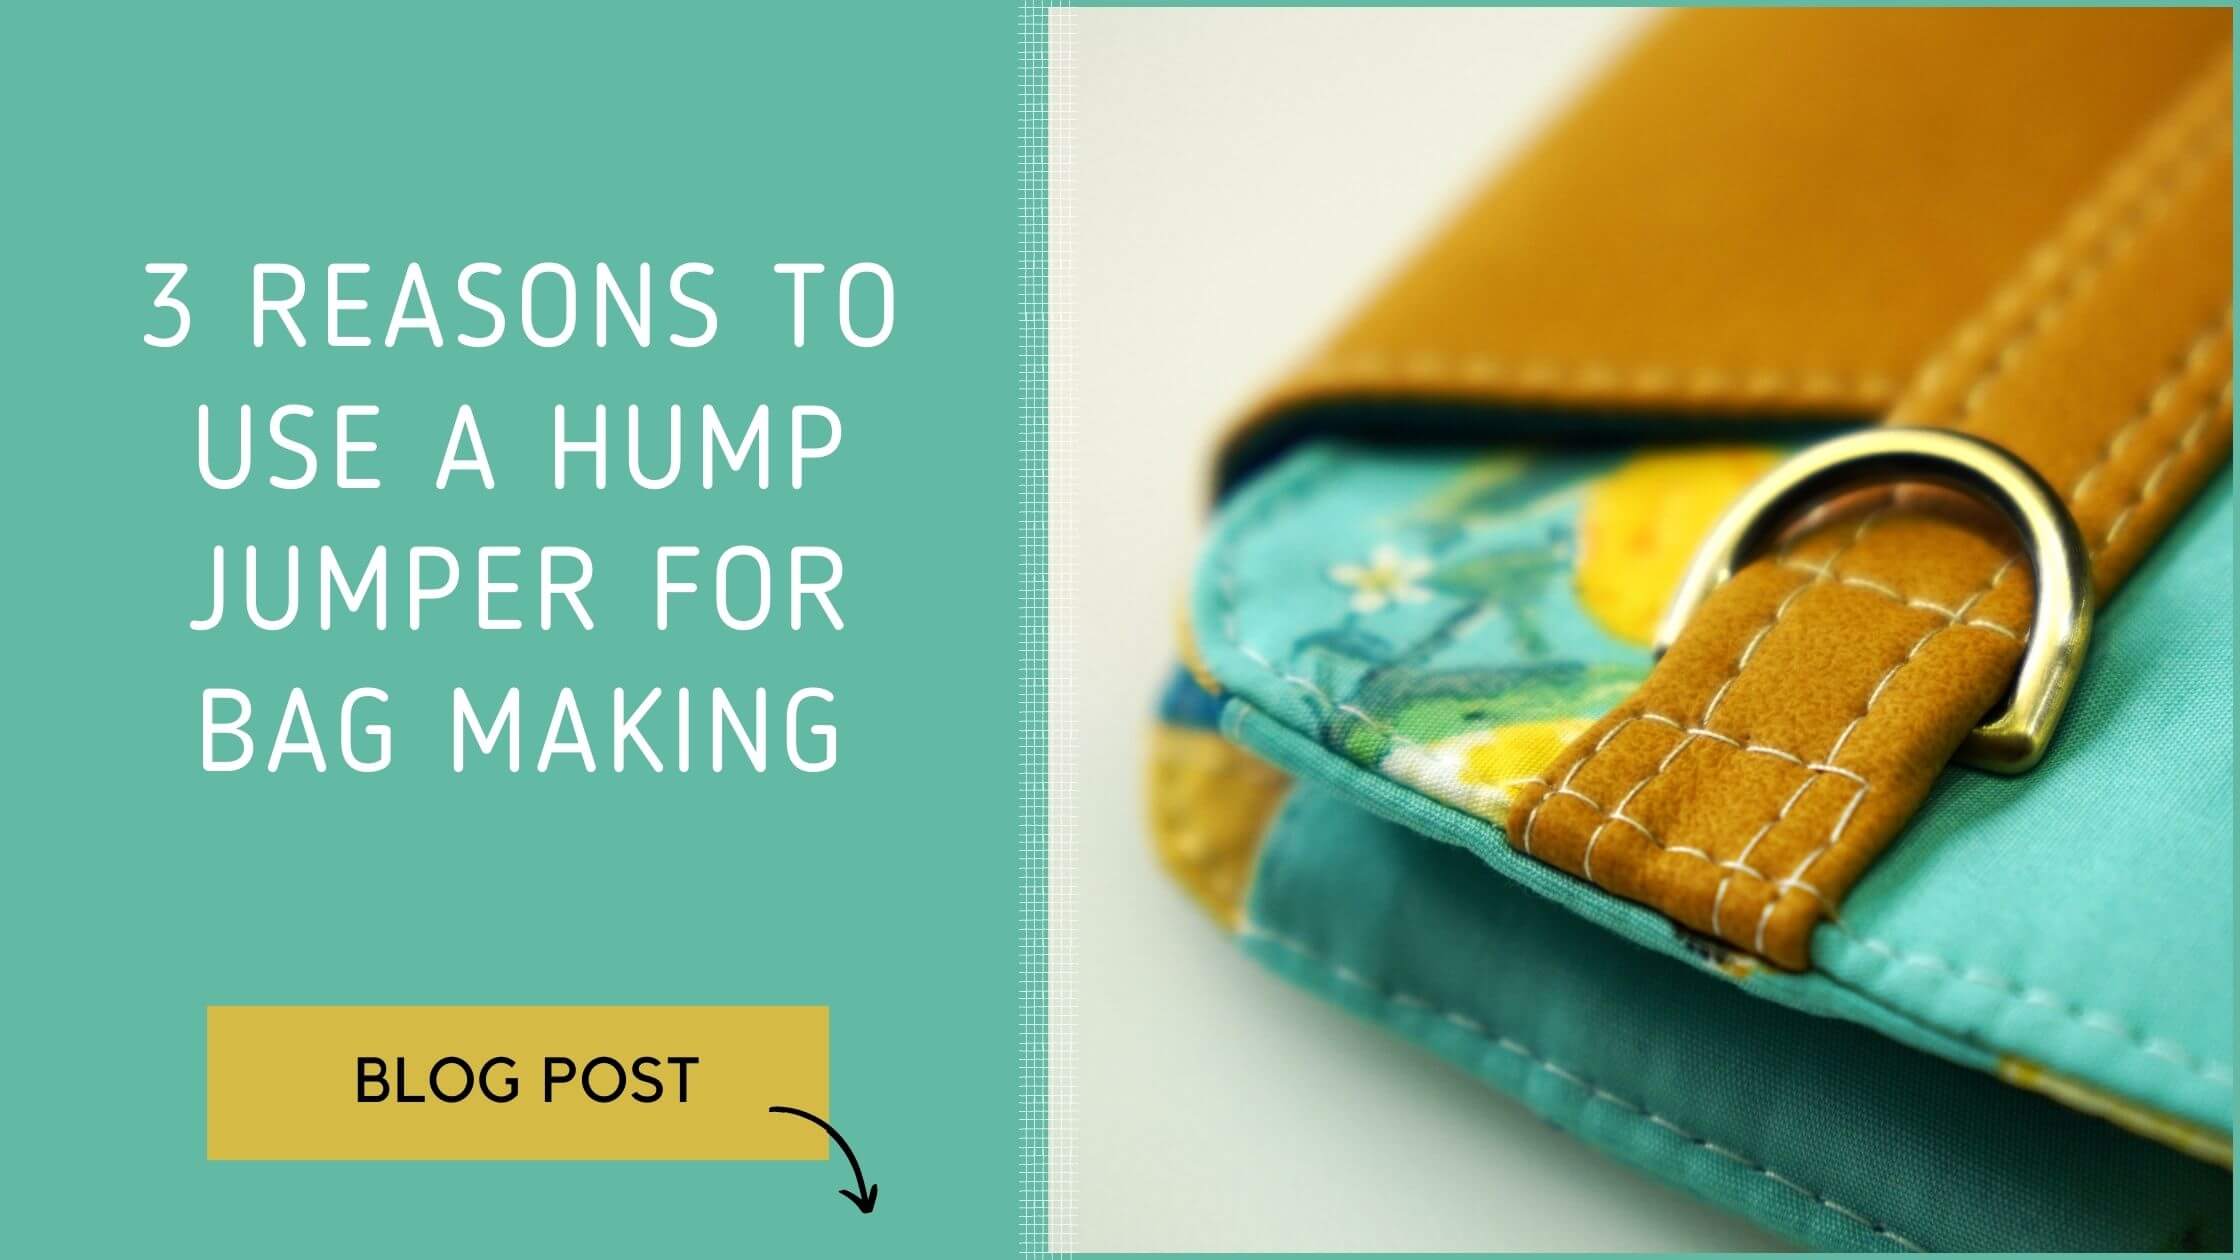 Hump Jumper Blog Post